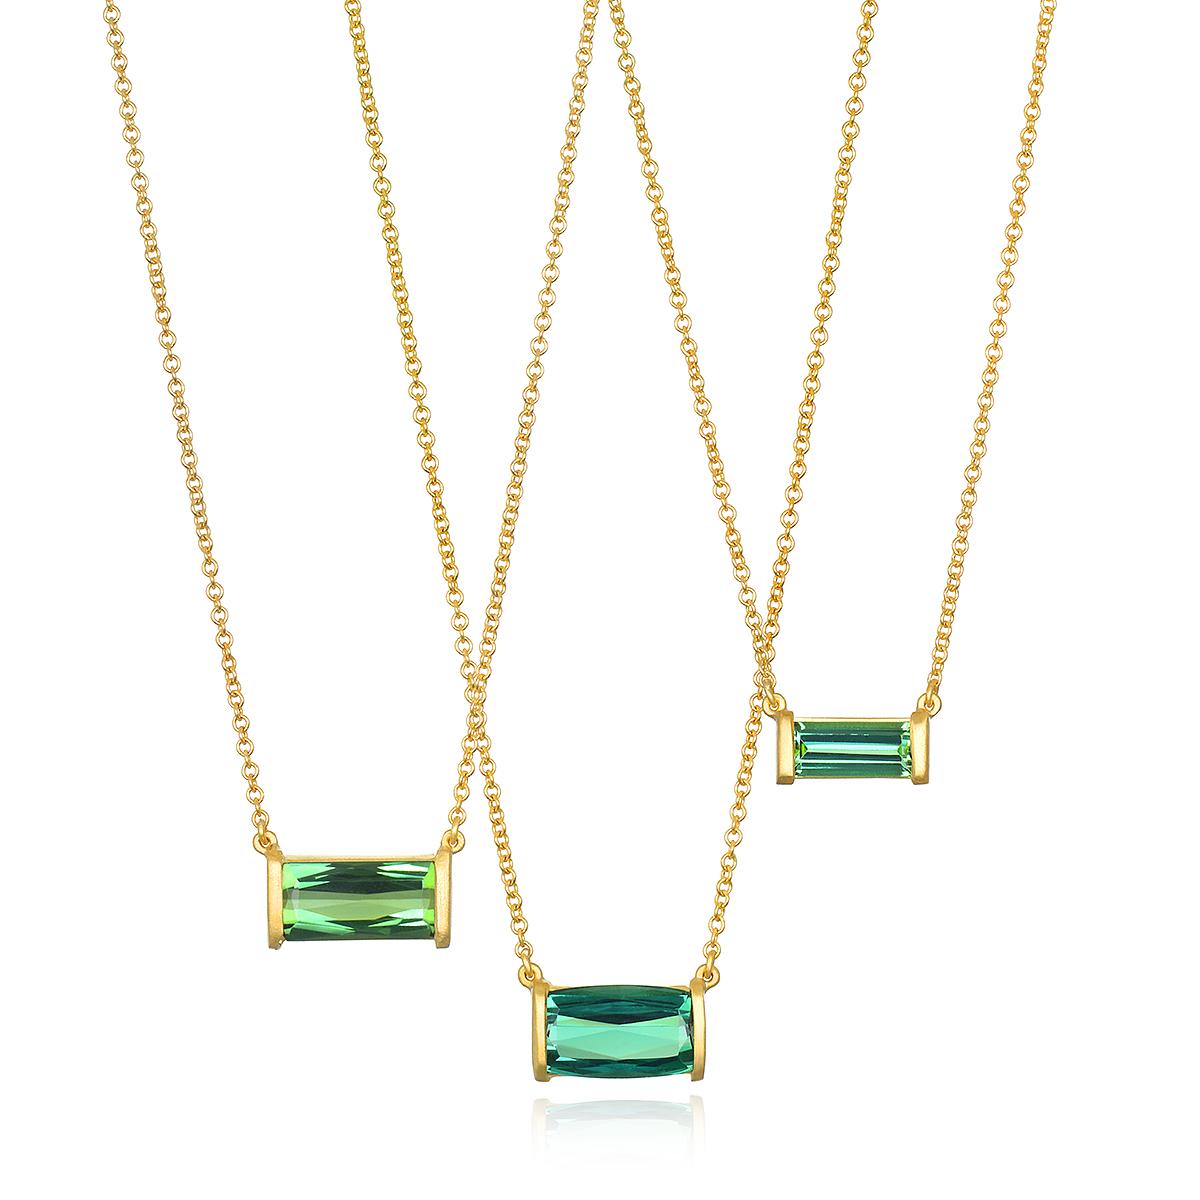 Le collier en or 18 carats de Faye Kim, composé de tourmalines vertes taillées en France, présente une pierre précieuse aux couleurs vives, sertie d'une finition en or mat. Il ajoutera de l'éclat à toute garde-robe et peut être porté seul ou avec